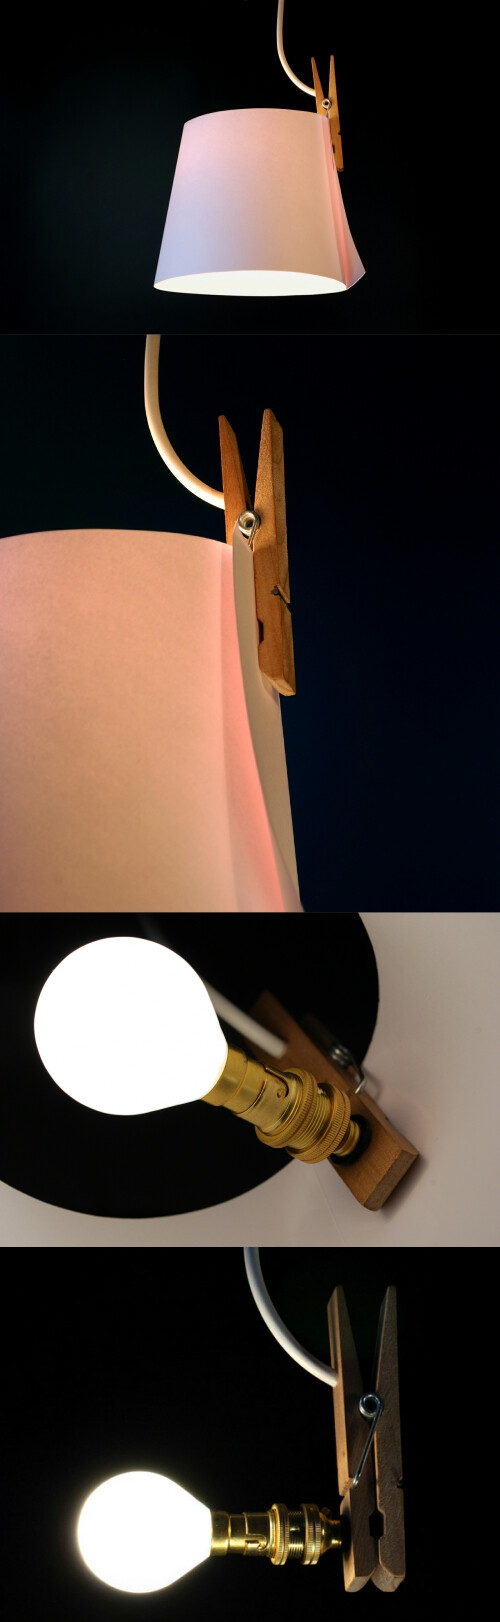 现居英国伦敦的日本家具设计师山中一宏（Kazuhiro Yamanaka）设计了一款名为“纸月亮”的极简吊灯，整个灯只由三部分组成：一个木头夹子，一张纸，和一个灯泡。使用时将纸卷成一个圆筒，用夹子夹住，罩在灯泡周围即可。你可以使用任何材料、形状和颜色的纸当做灯罩，从而获得不同的照明效果。为了保持整体中雷平衡，吊灯经过精心设计。更多：http://www.shejipi.com/